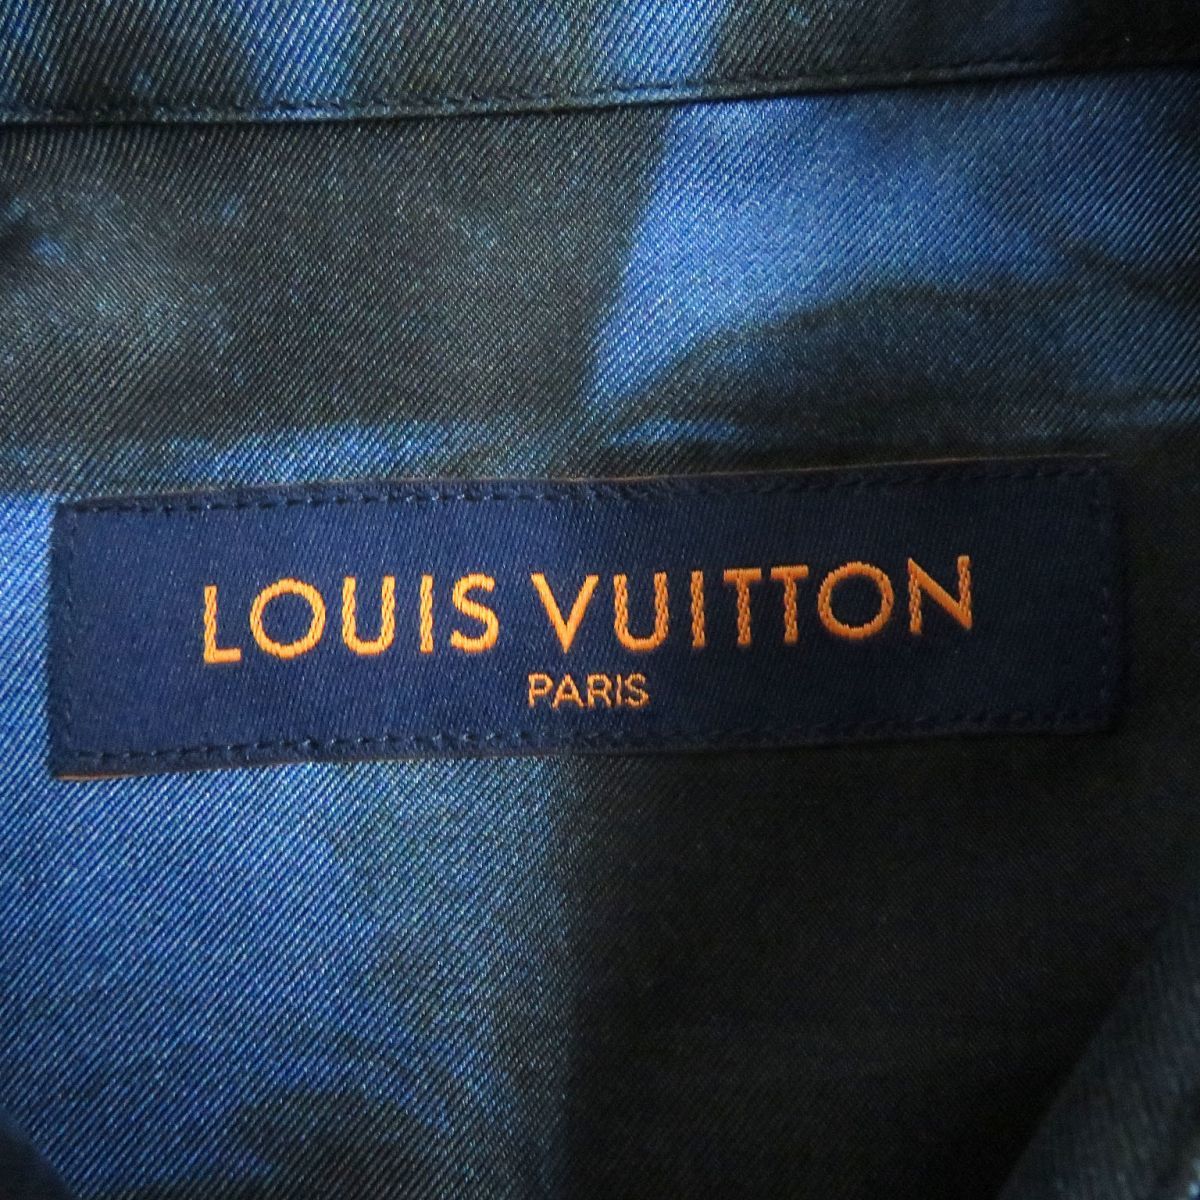  ultimate beautiful goods *21AW Louis Vuitton 1A8XBX salt print / total pattern silk 100% long sleeve design shirt navy XS Italy made regular goods 